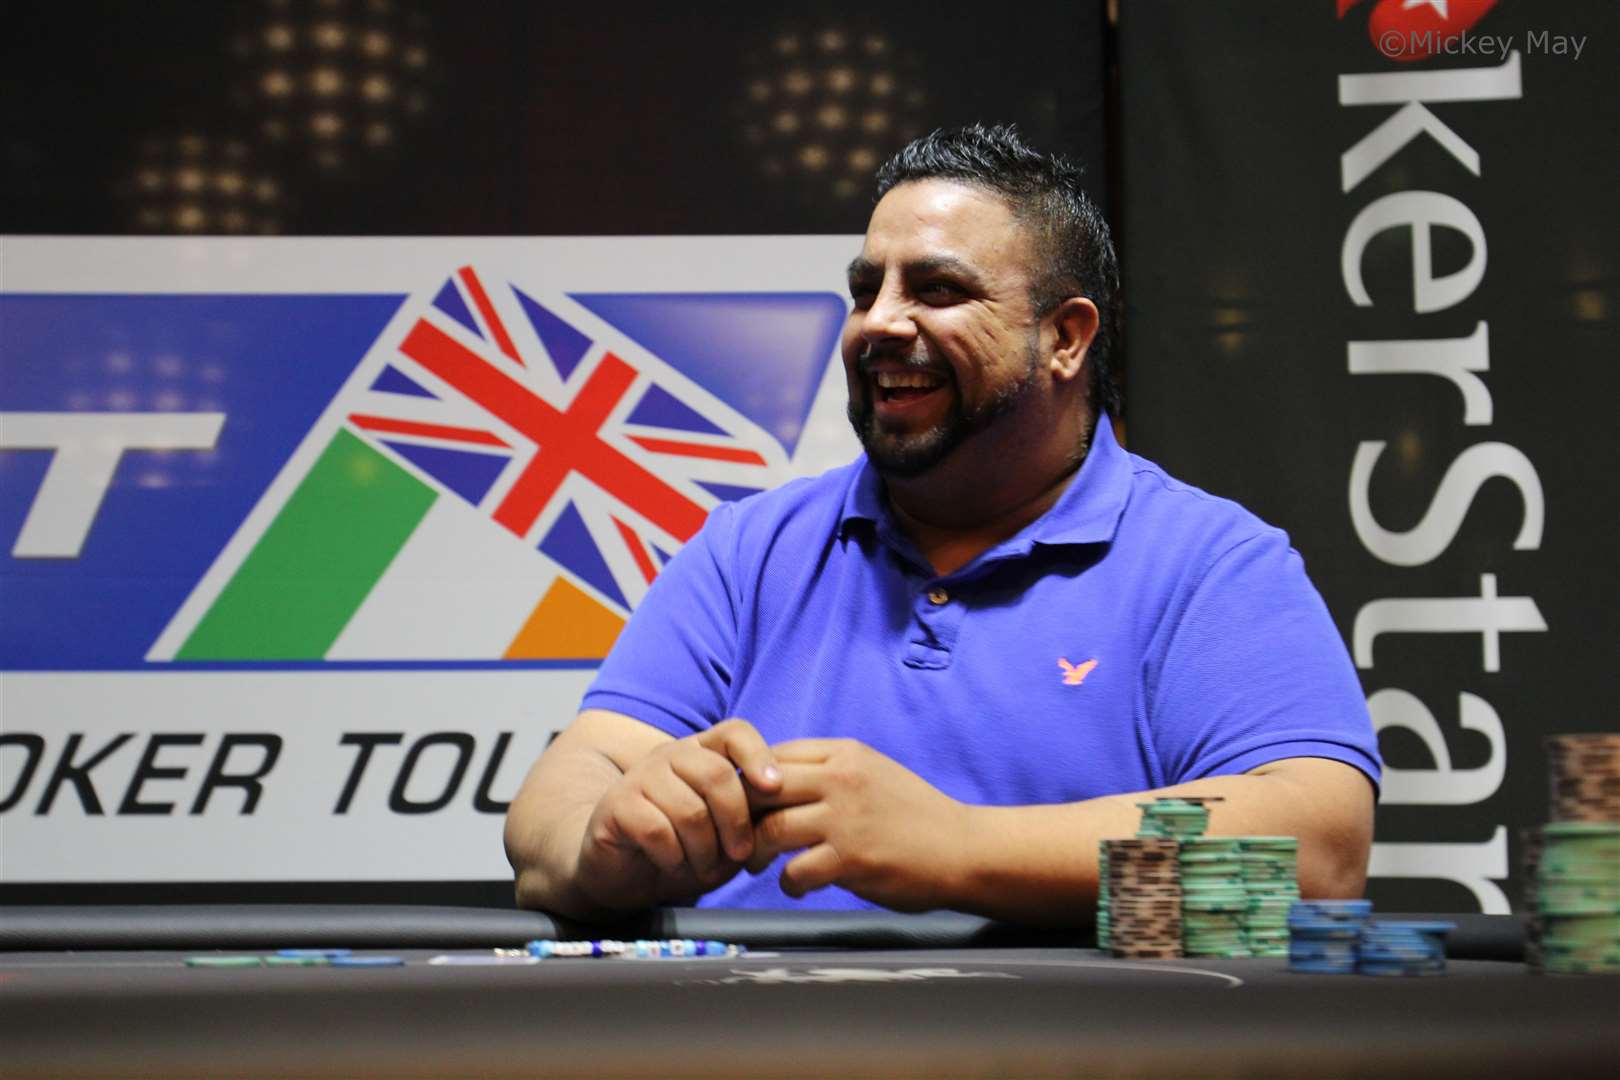 Rapinder Cheema playing at PokerStars UK and Ireland Poker Tour in London. Credit: Mickey May